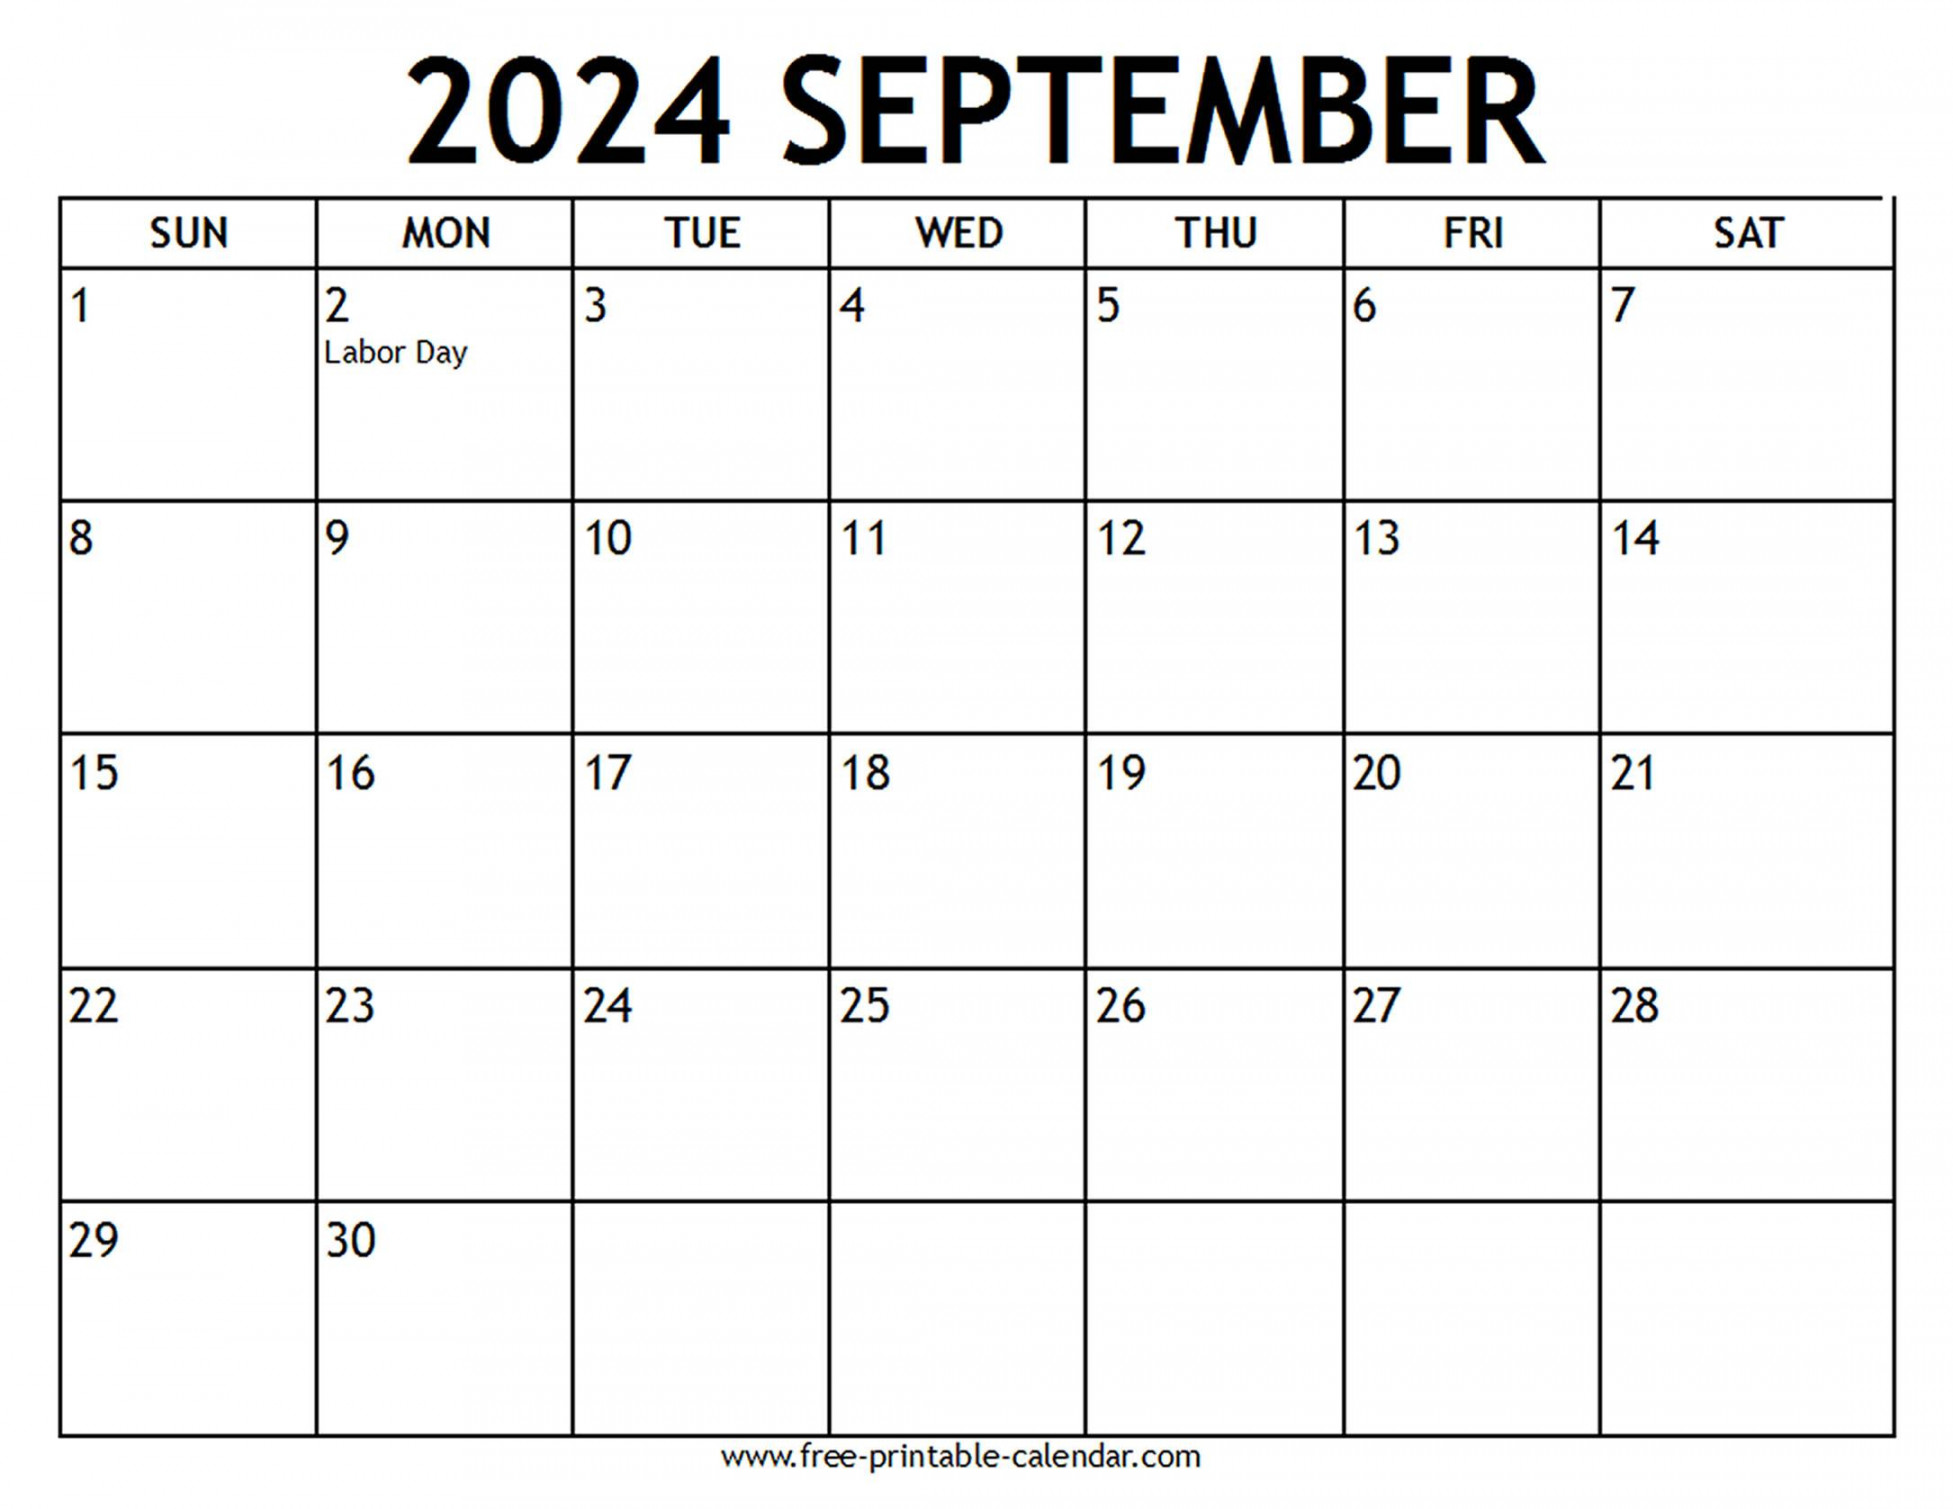 september calendar us holidays free printable calendar com